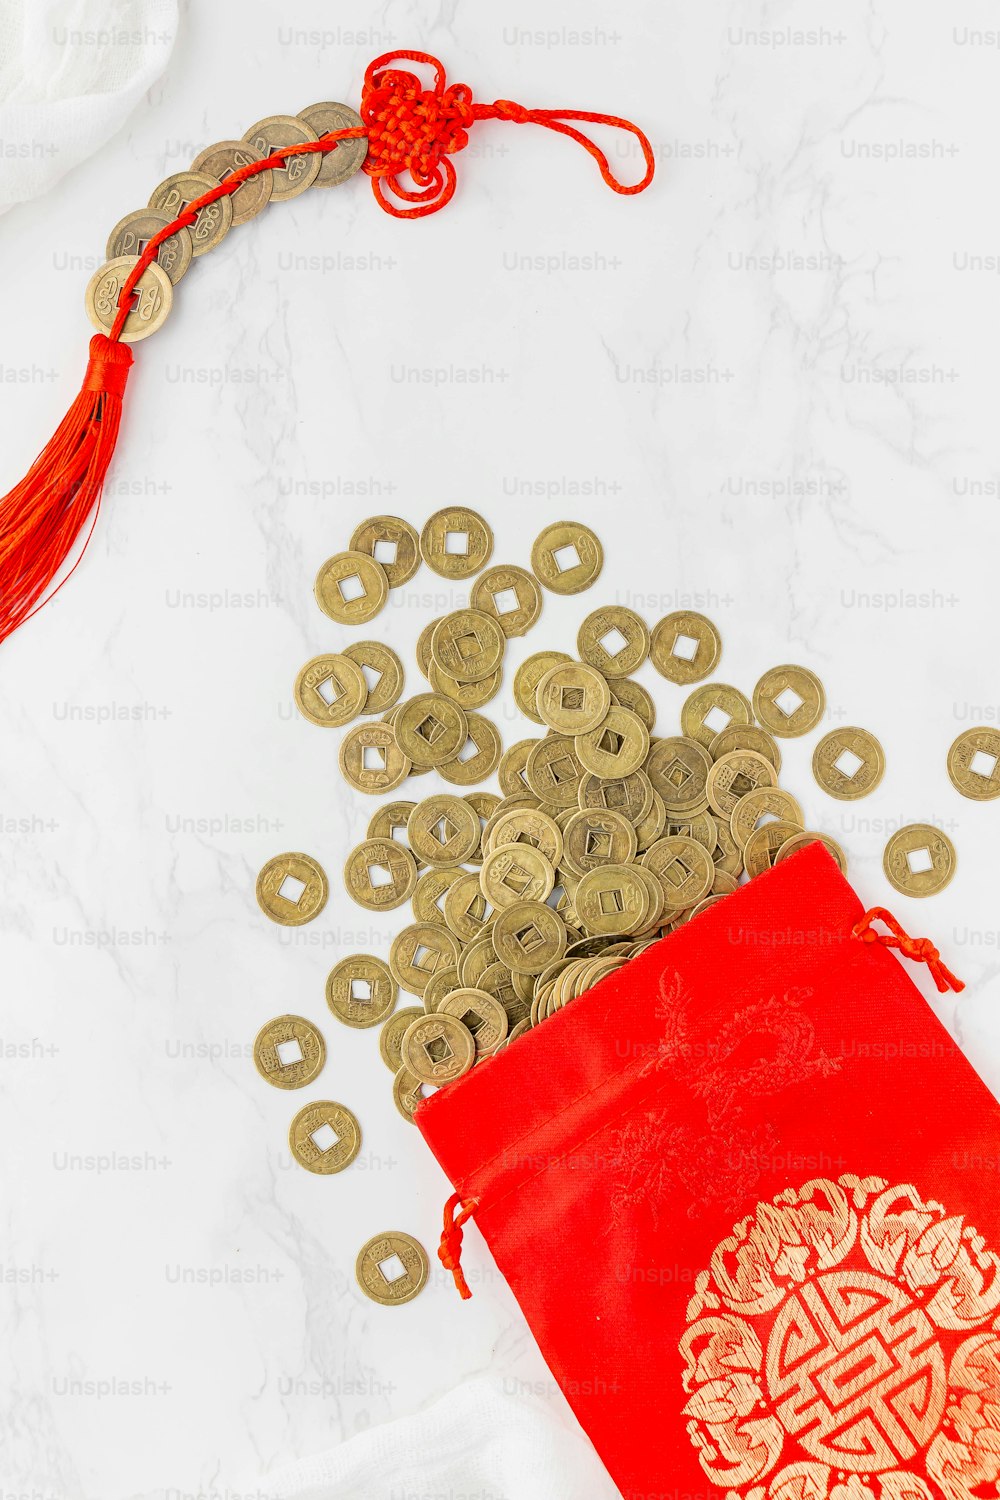 un sac rouge rempli de pièces d’or à côté d’un sac rouge rempli de pièces d’or